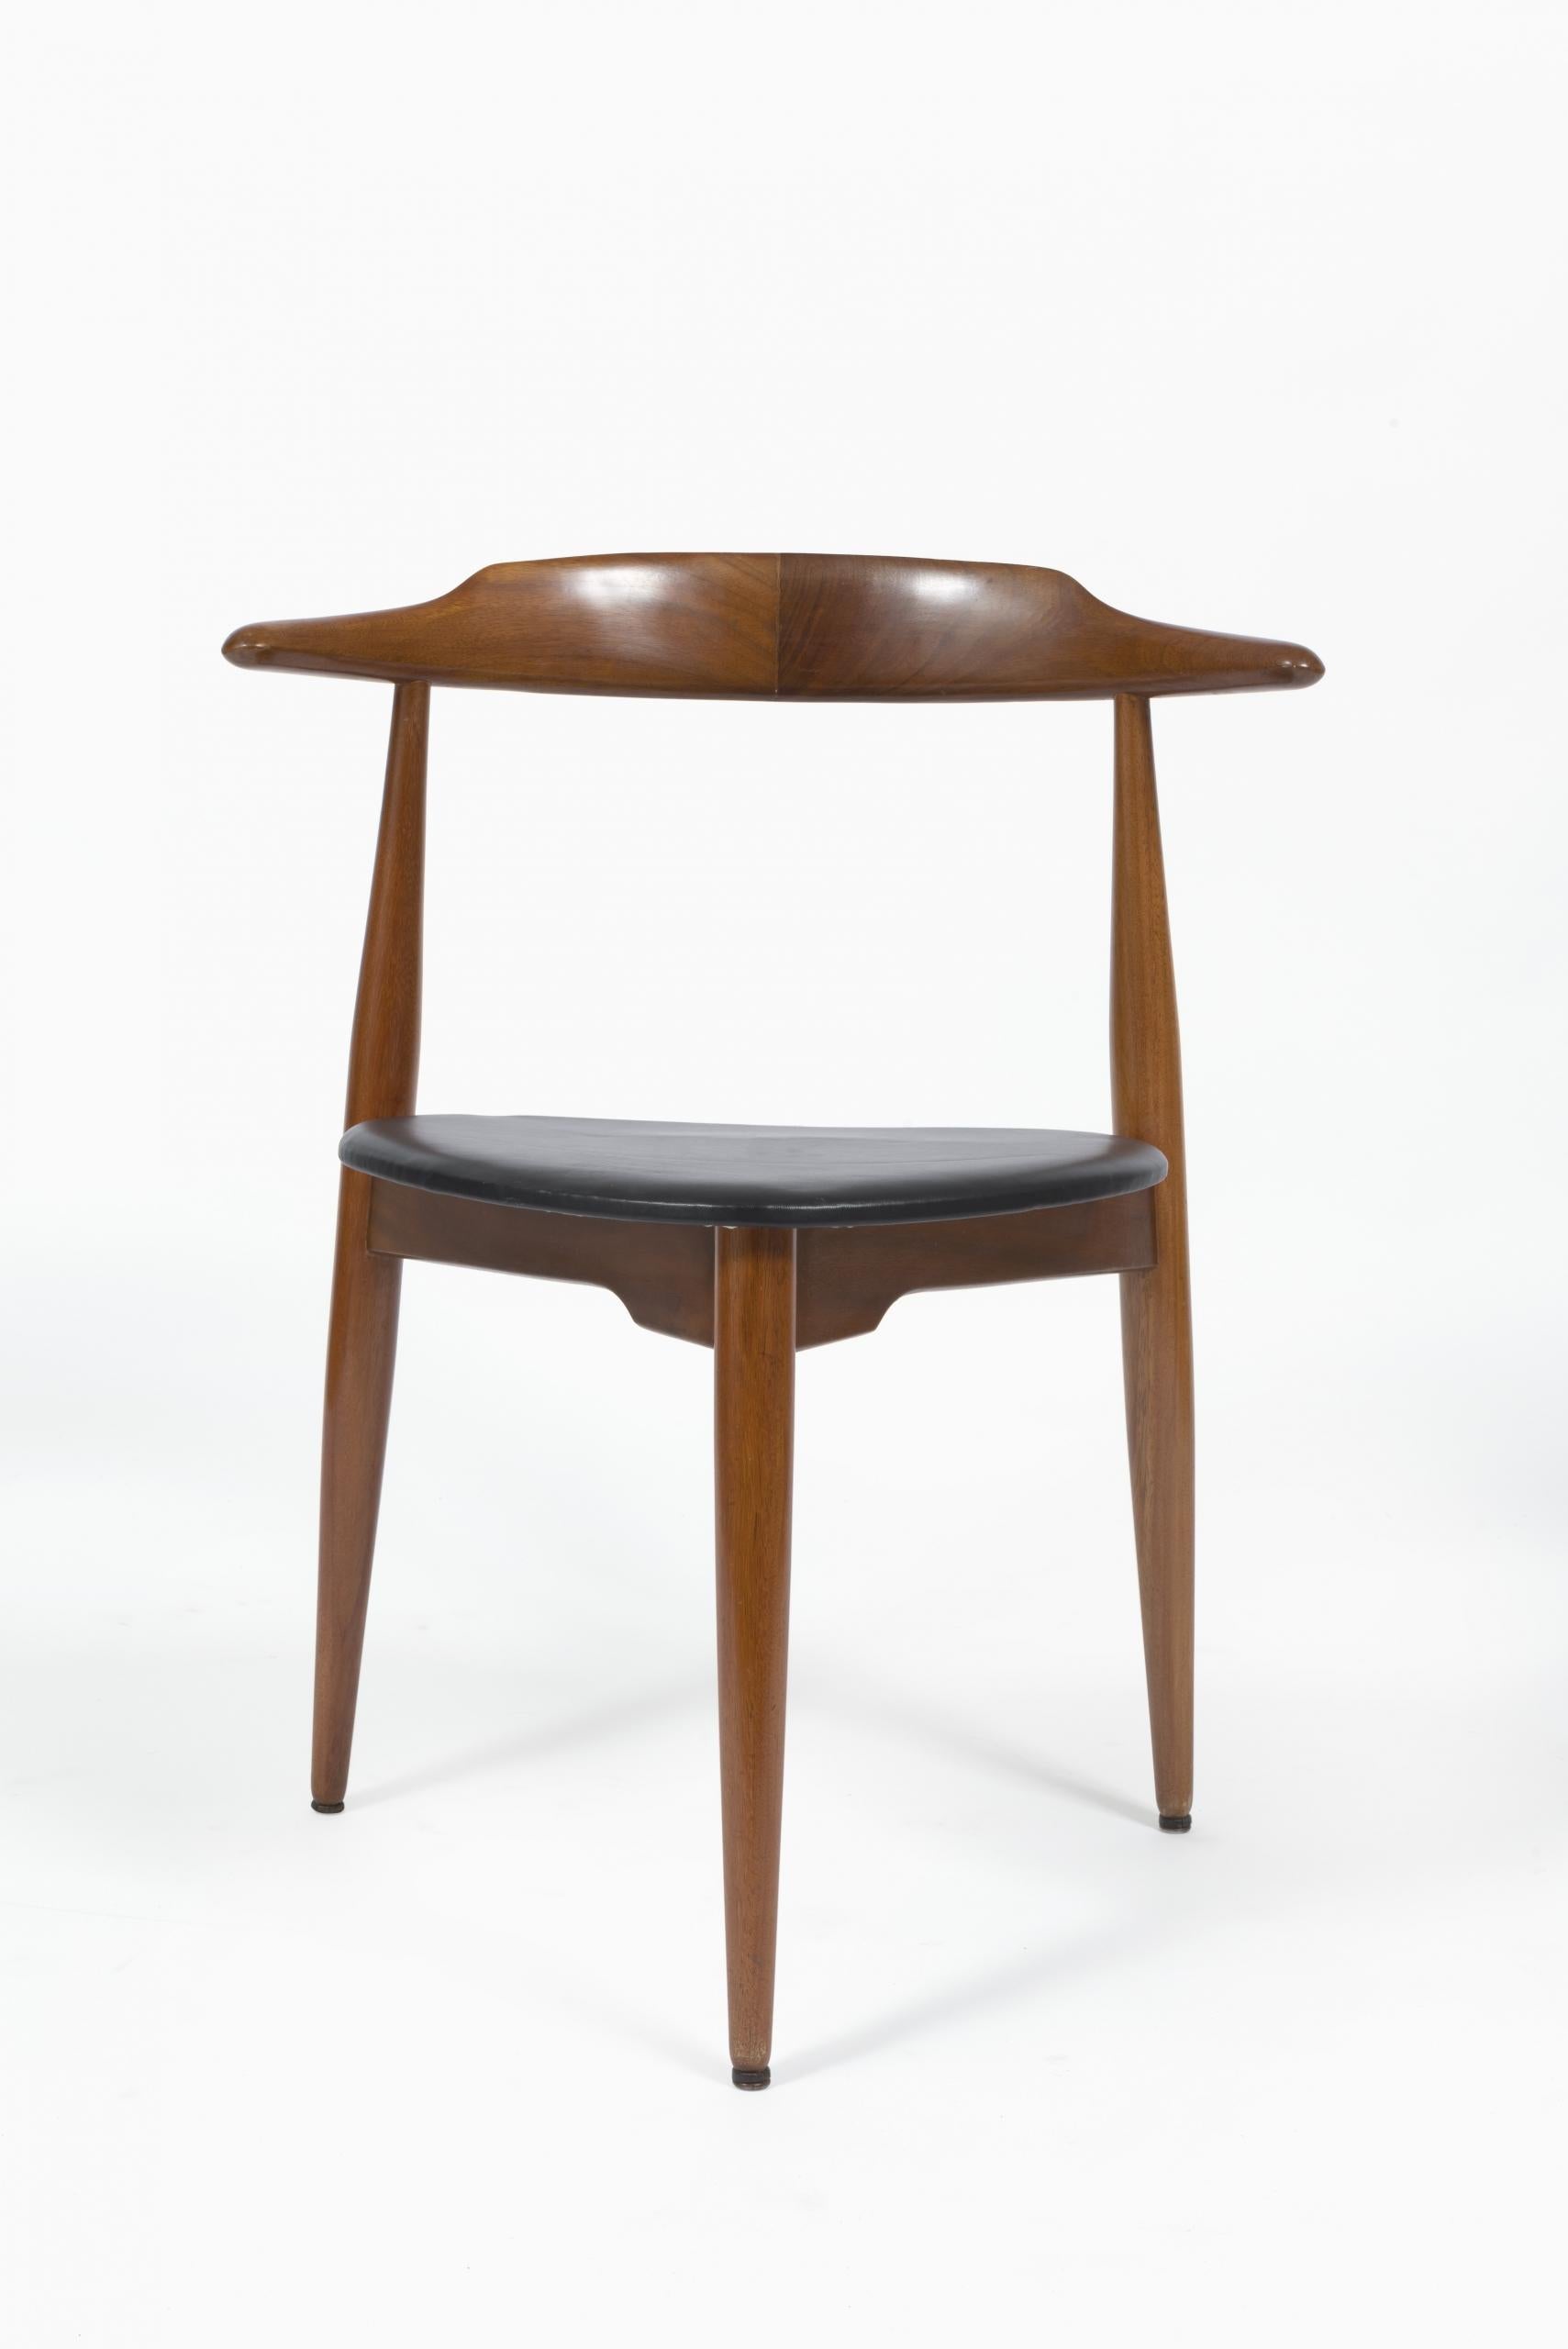 Modèle conçu à l'origine par Hans J. Wegner dans les années 1950, le FH4103 a été fabriqué par Fritz Hansen et vendu à Londres par Story's of Kensington.

Construites en bois de hêtre, les chaises FH4103 sont également connues sous le nom de